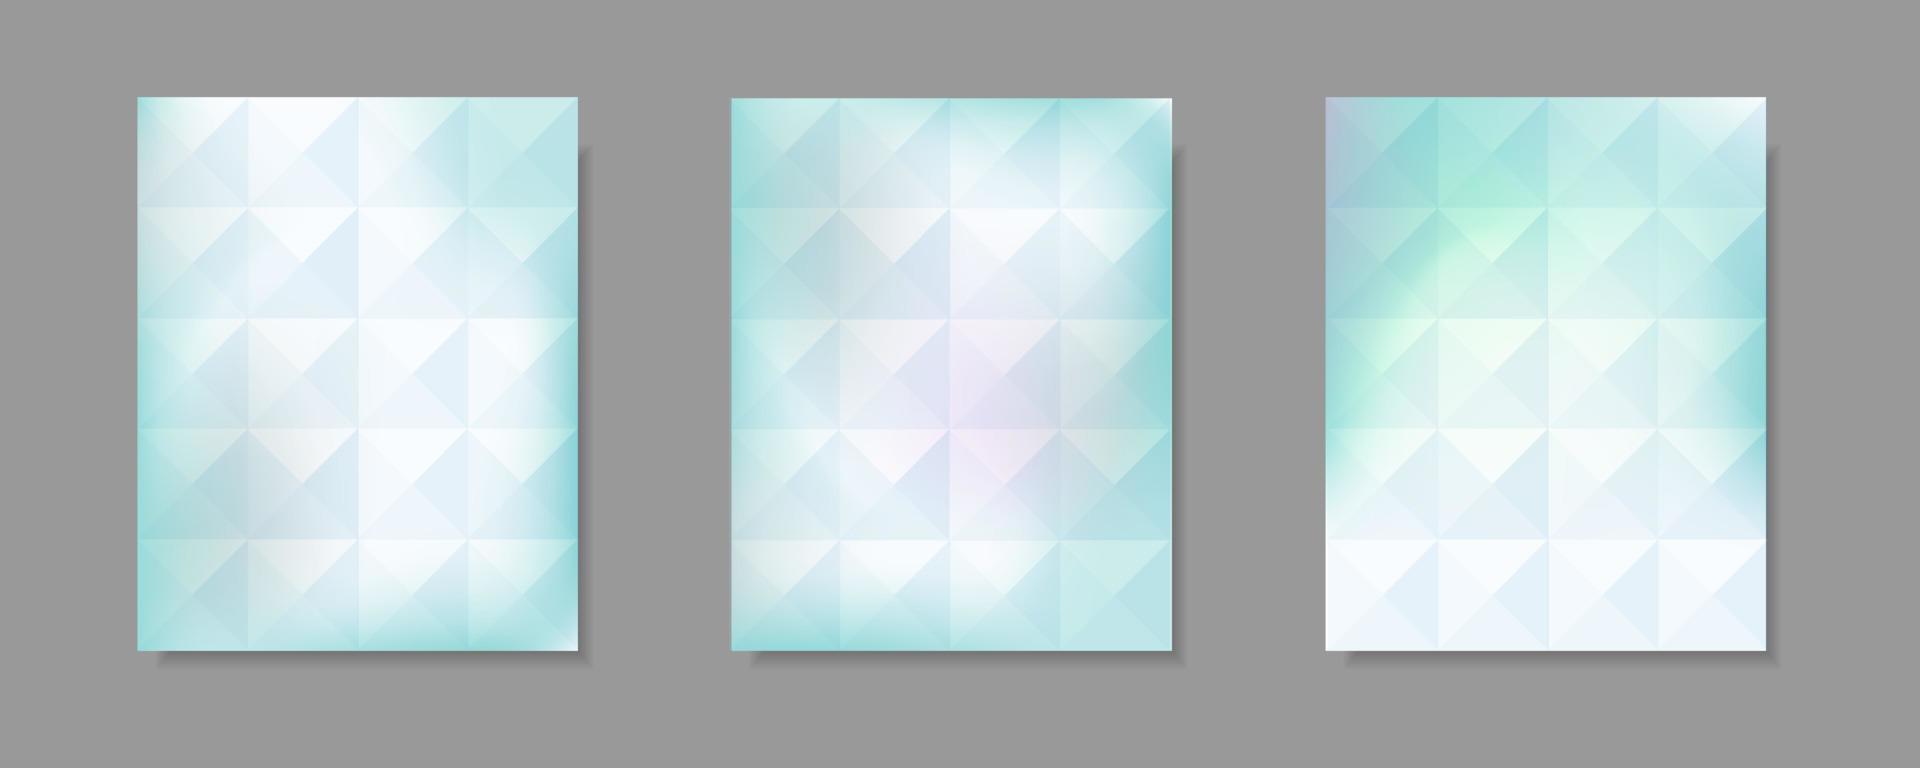 satz von abstrakten blau-weißen farbverlaufsvektor-abdeckungshintergründen. Dreiecksmusterdesign mit Kristallformstil für Geschäftsbroschürenhintergrund, Poster und Grafikdesign. Illustrationsvorlage vektor